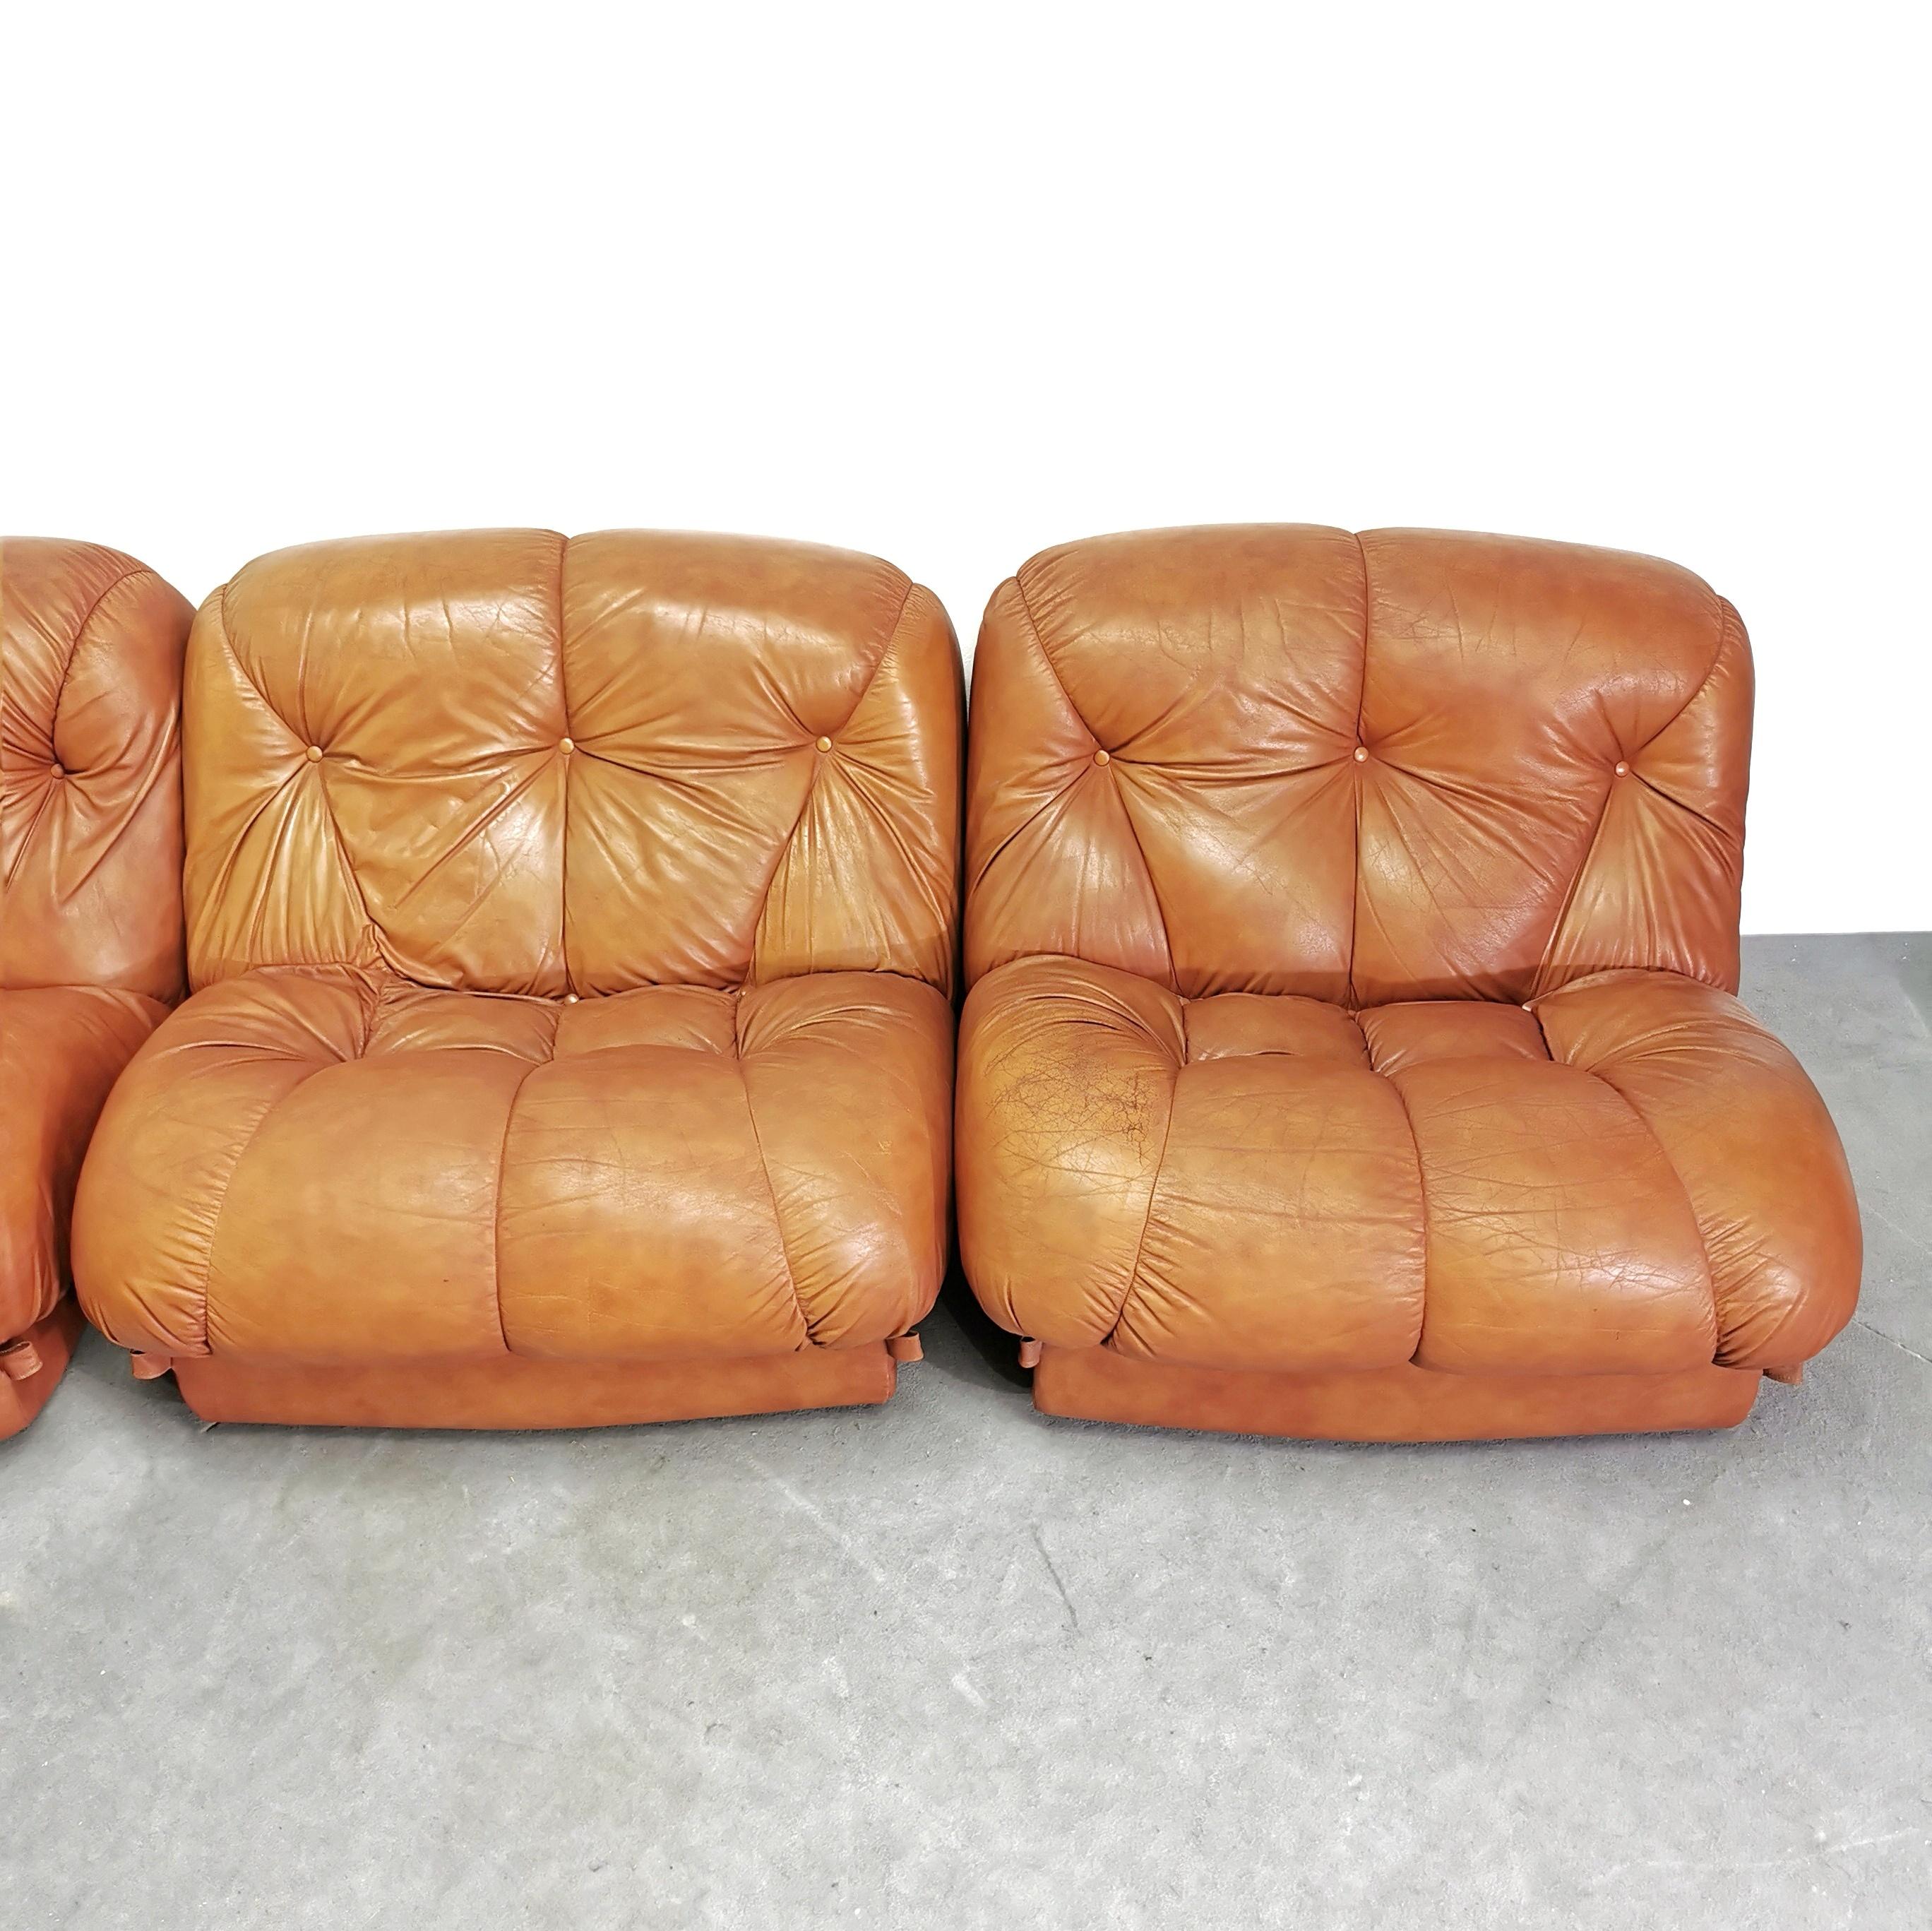 20th Century Nuvolone modular leather sofa 5 modules 70s Rino Maturi for Mimo Design  For Sale